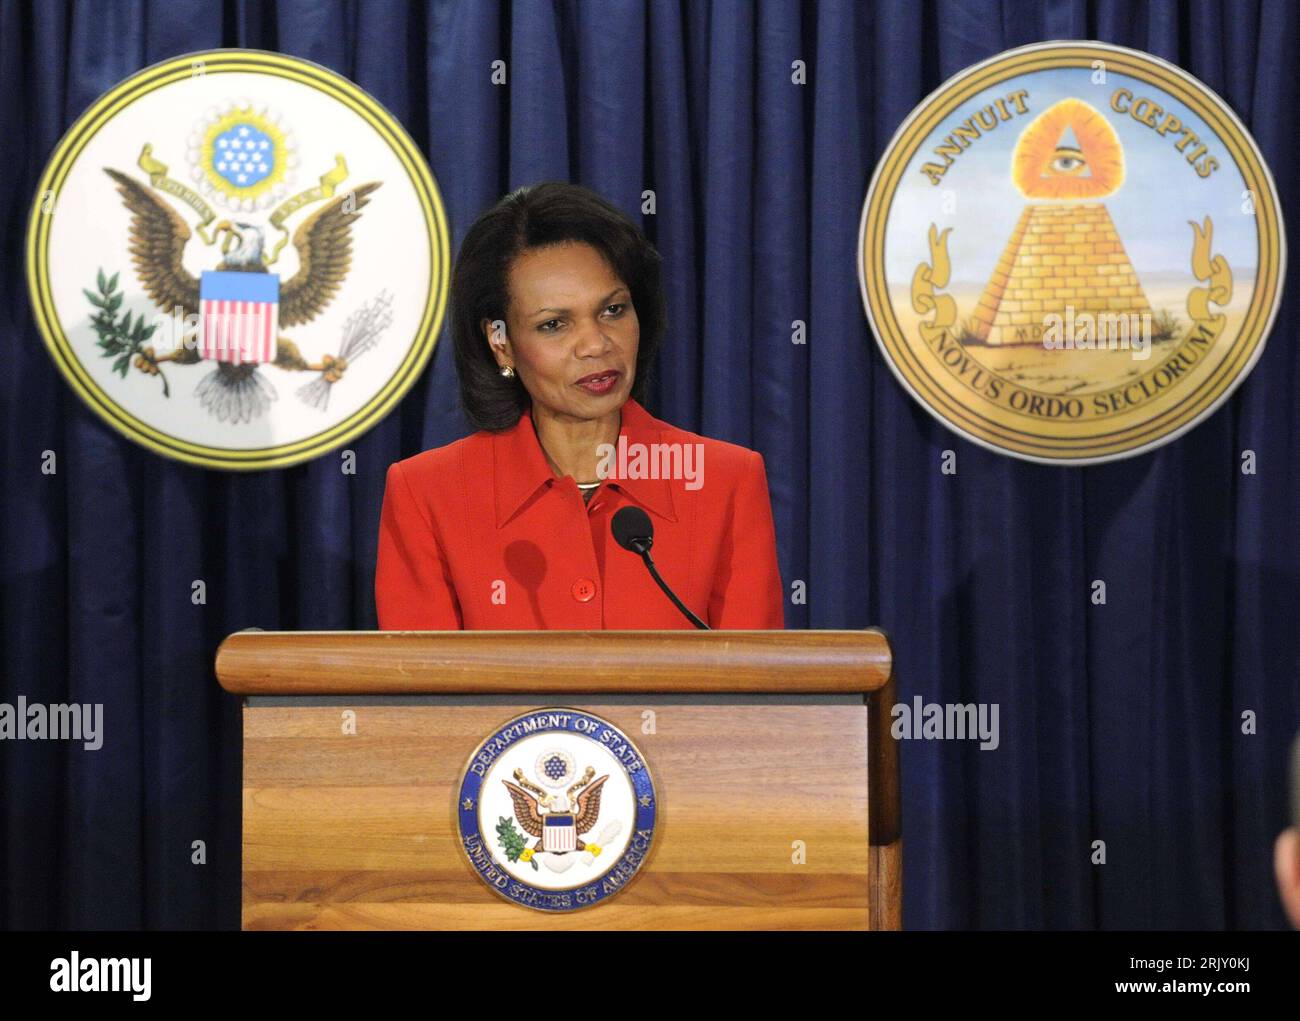 Bildnummer: 52397000  Datum: 12.02.2008  Copyright: imago/Xinhua Außenministerin Condoleezza Rice (USA) anlässlich einer Rede zum 225. Jubiläum des US-Staatswappens - Great Seal - (li. hinten die Vorderseite, re. die Rückseite) im Außenministerium in Washington D.C. - PUBLICATIONxNOTxINxCHN, Personen , premiumd; 2008, Washington D.C., DC, Politik, Politiker, Politikerin, Staatswappen, Pressetermin; , quer, Kbdig, Einzelbild, Aktion, People, Nordamerika, Logos, Wappen Stock Photo